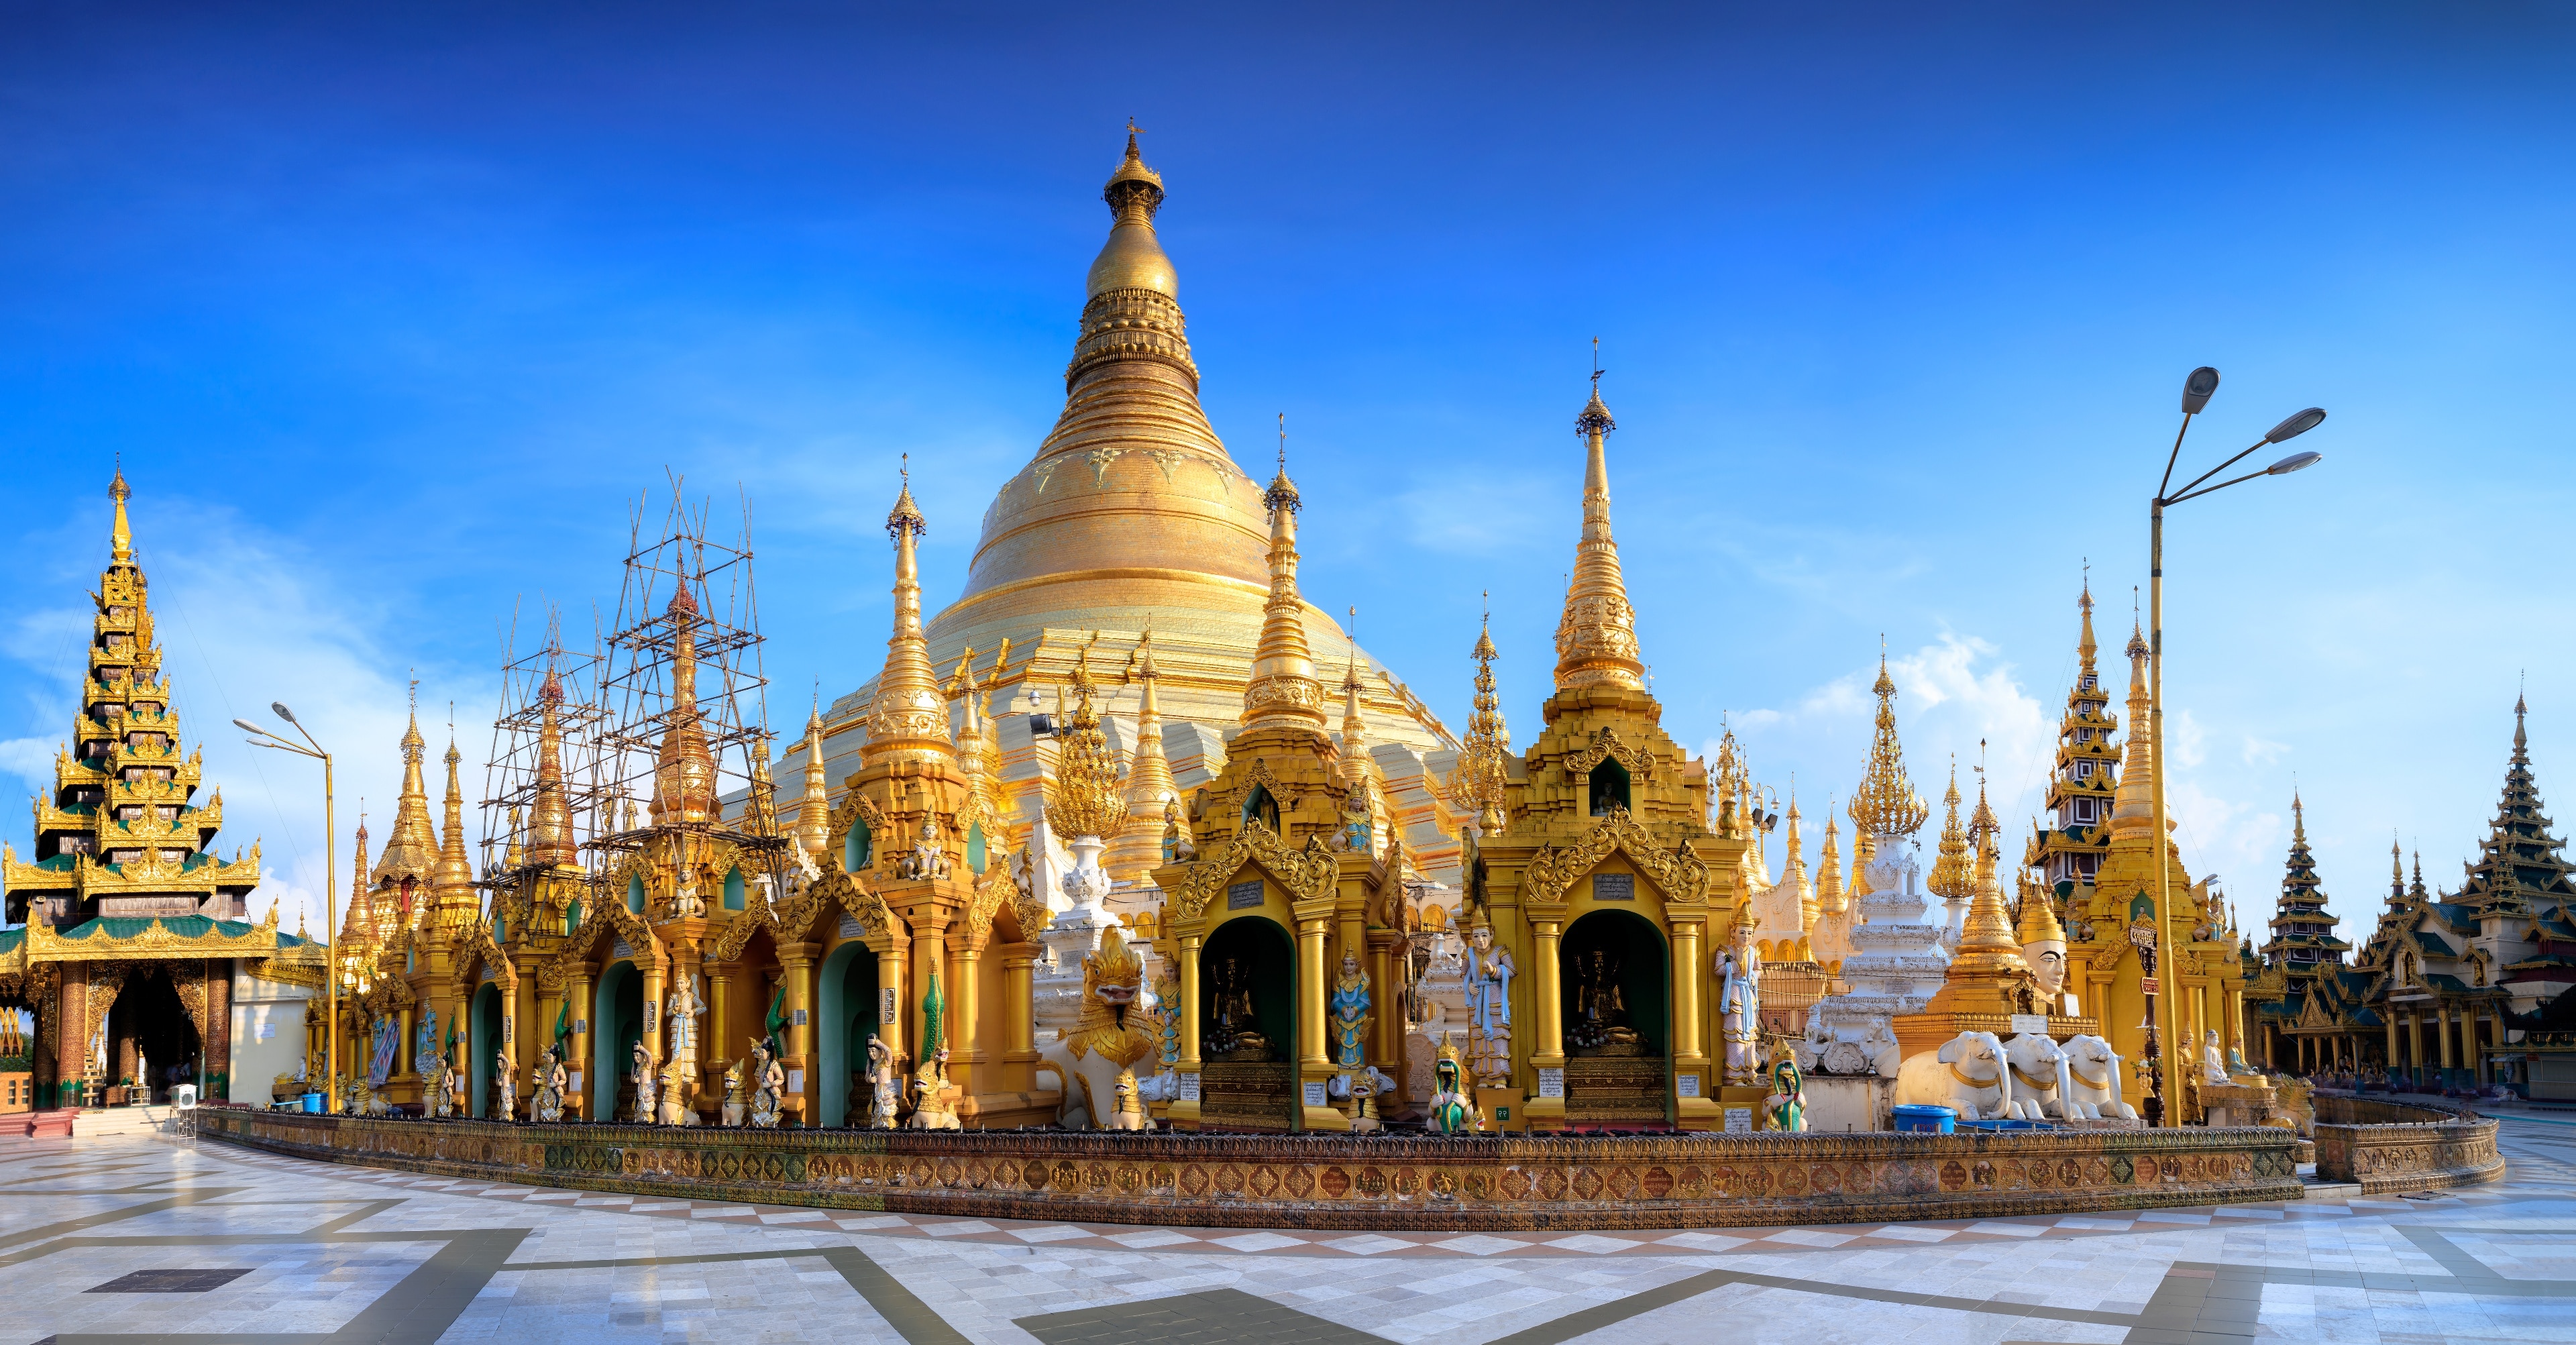 Du lịch Yangon: Tuyệt vời nhất tại Yangon 2023| Expedia.com.vn